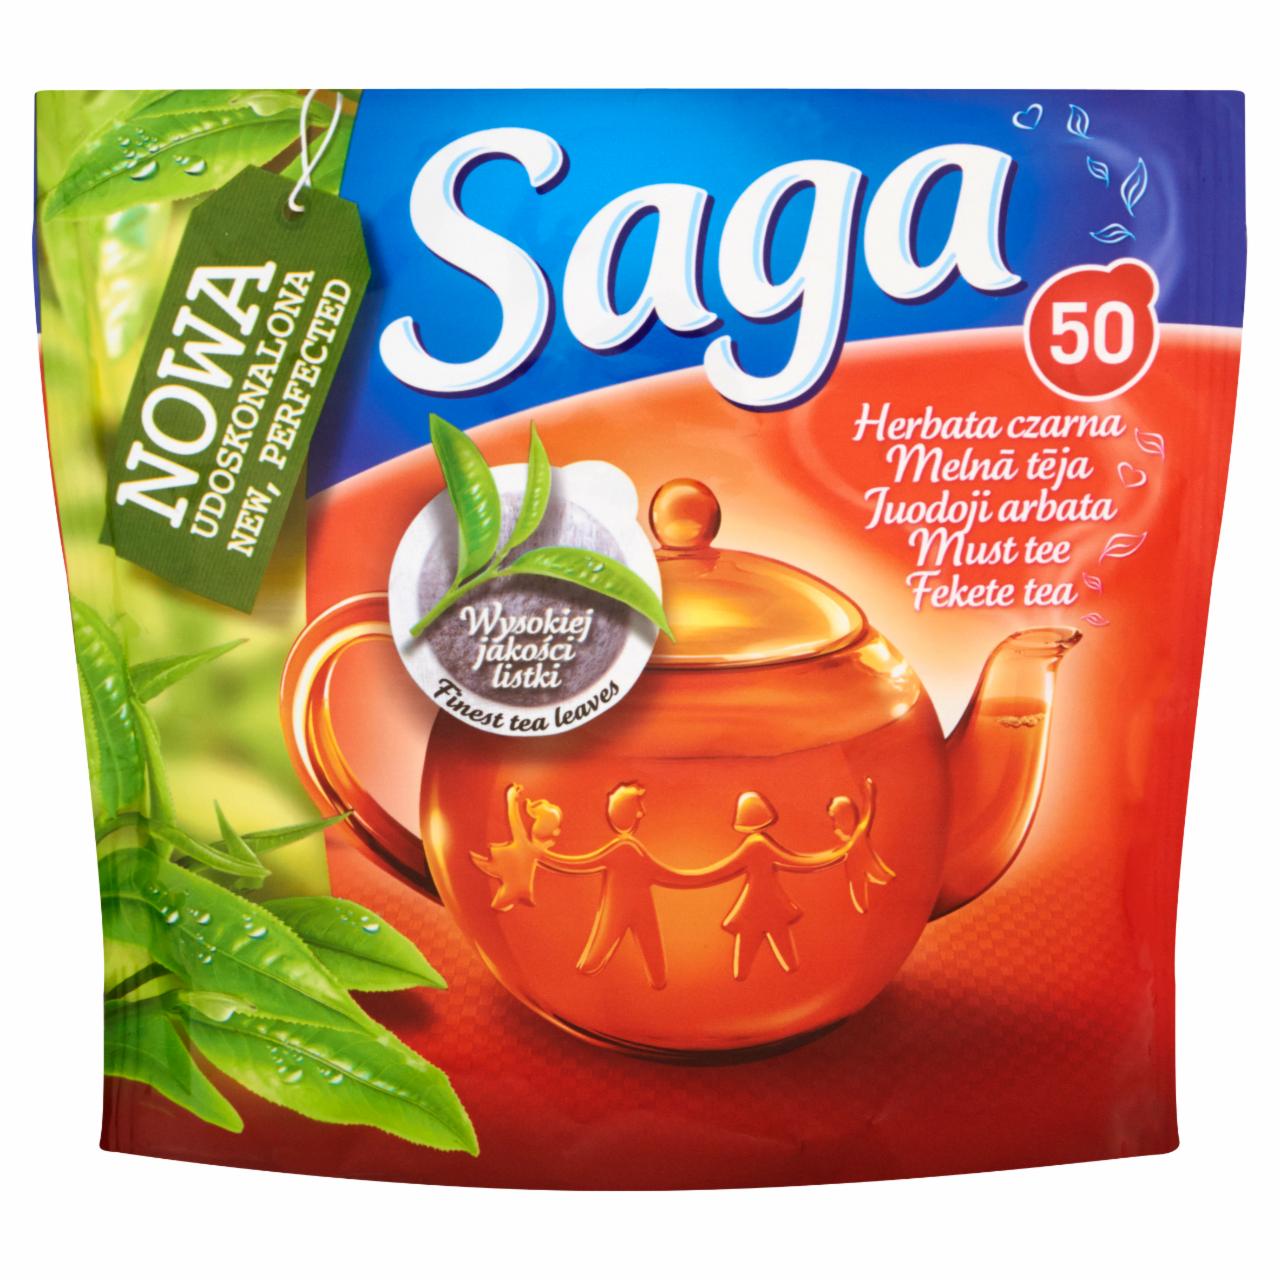 Zdjęcia - Saga Herbata czarna 60 g (50 torebek)